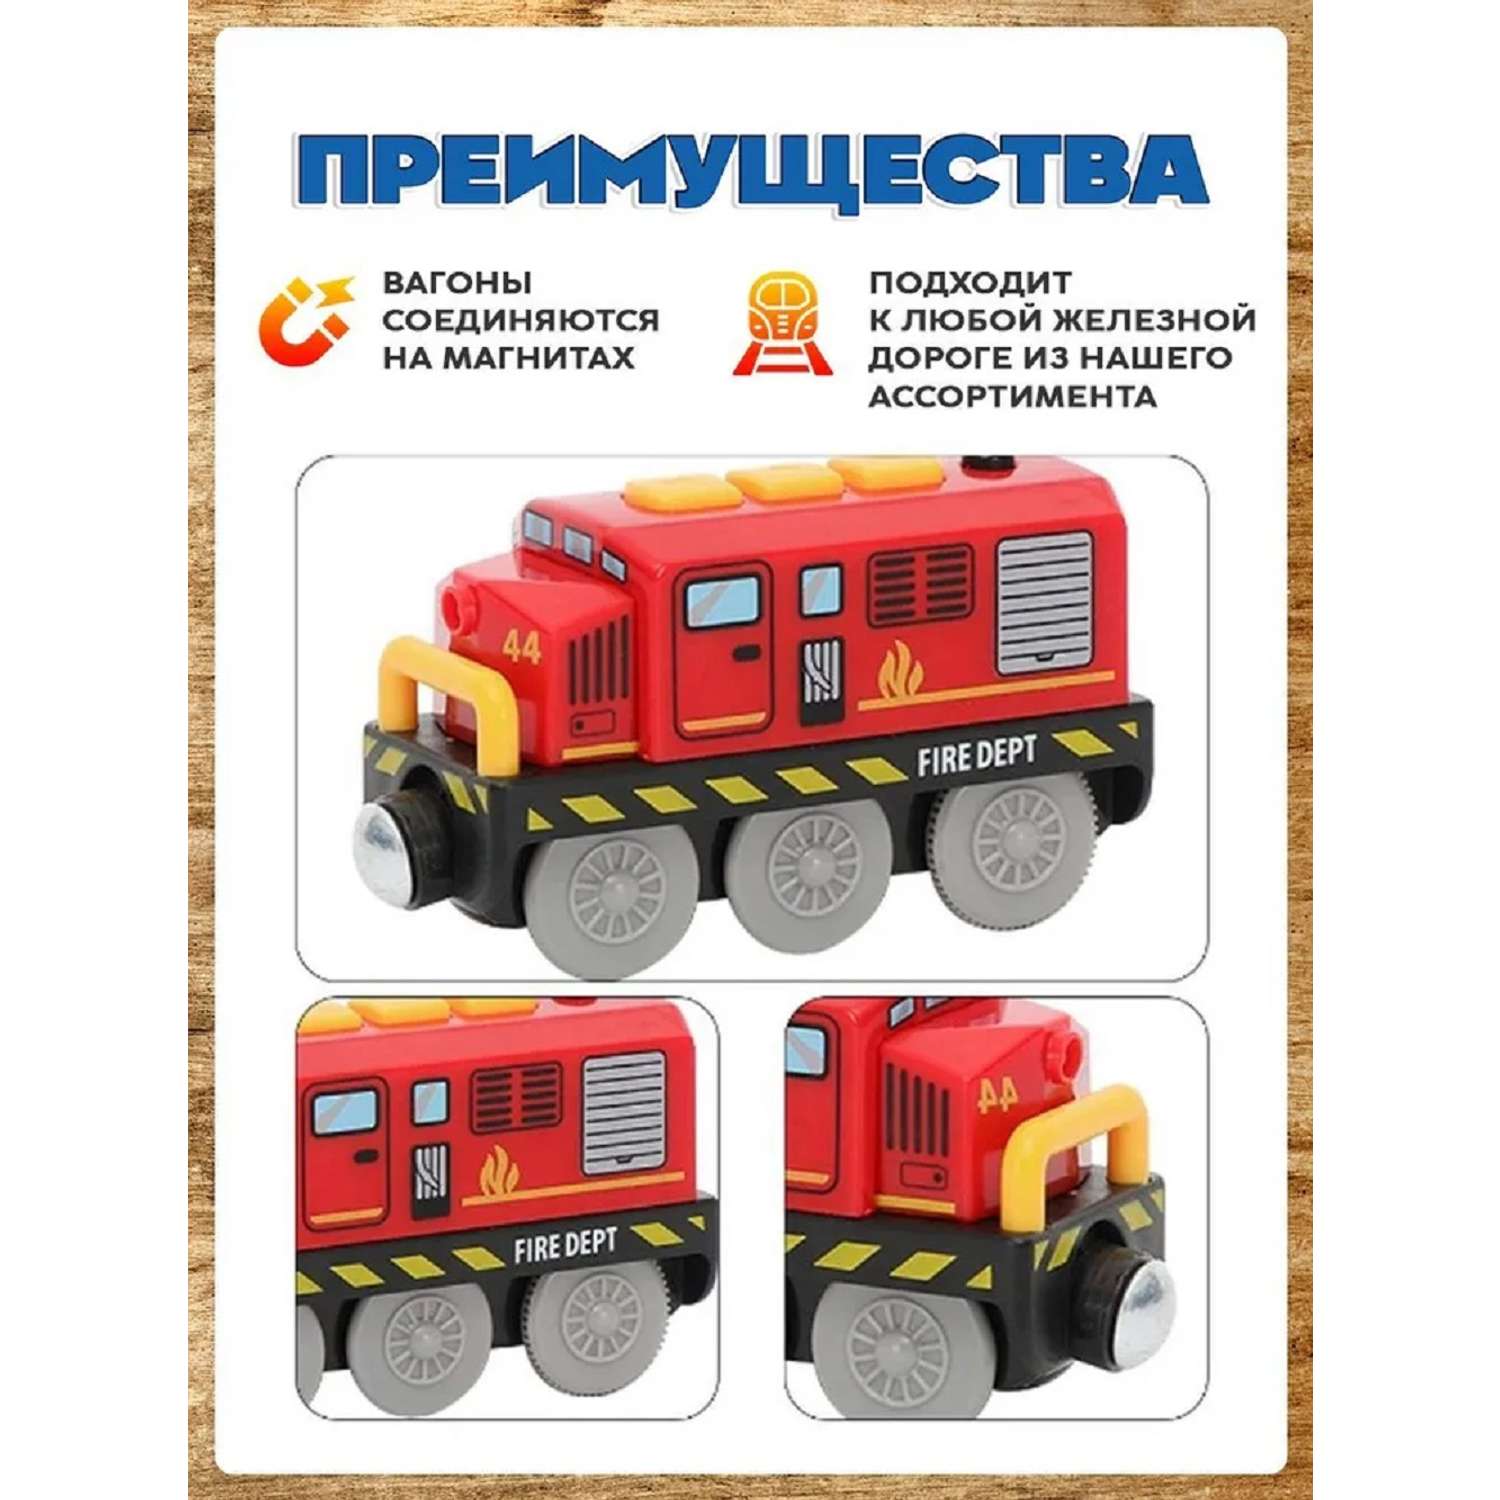 Поезд детский со светом А.Паровозиков пожарный со звуком игрушечная модель на батарейках АП-001/ПЛ-00022 - фото 4